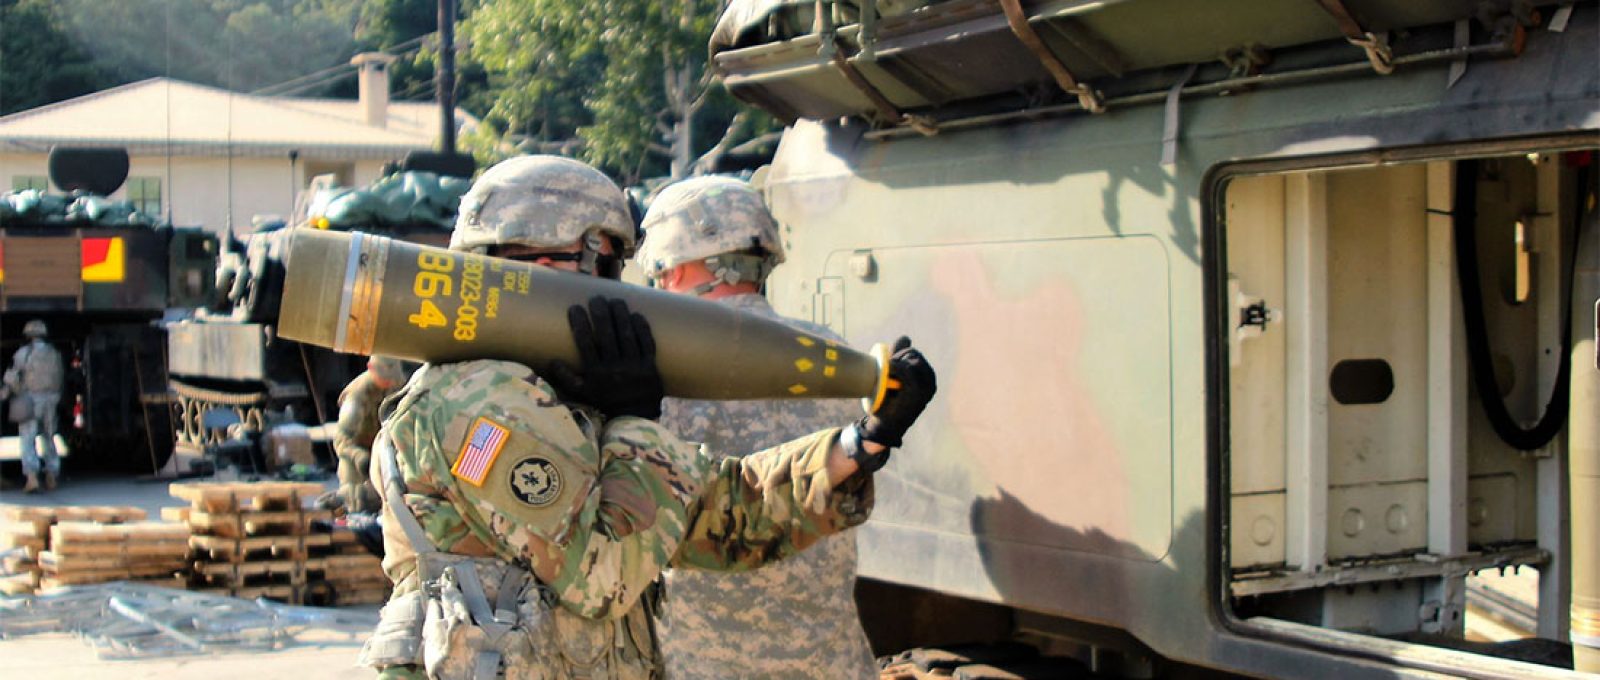 Militar dos EUA carregando munição DPICM de 155 mm durante um exercício na Coreia do Sul em 2016 (Gabriel Jenko/US Army//Wikimedia Commons).